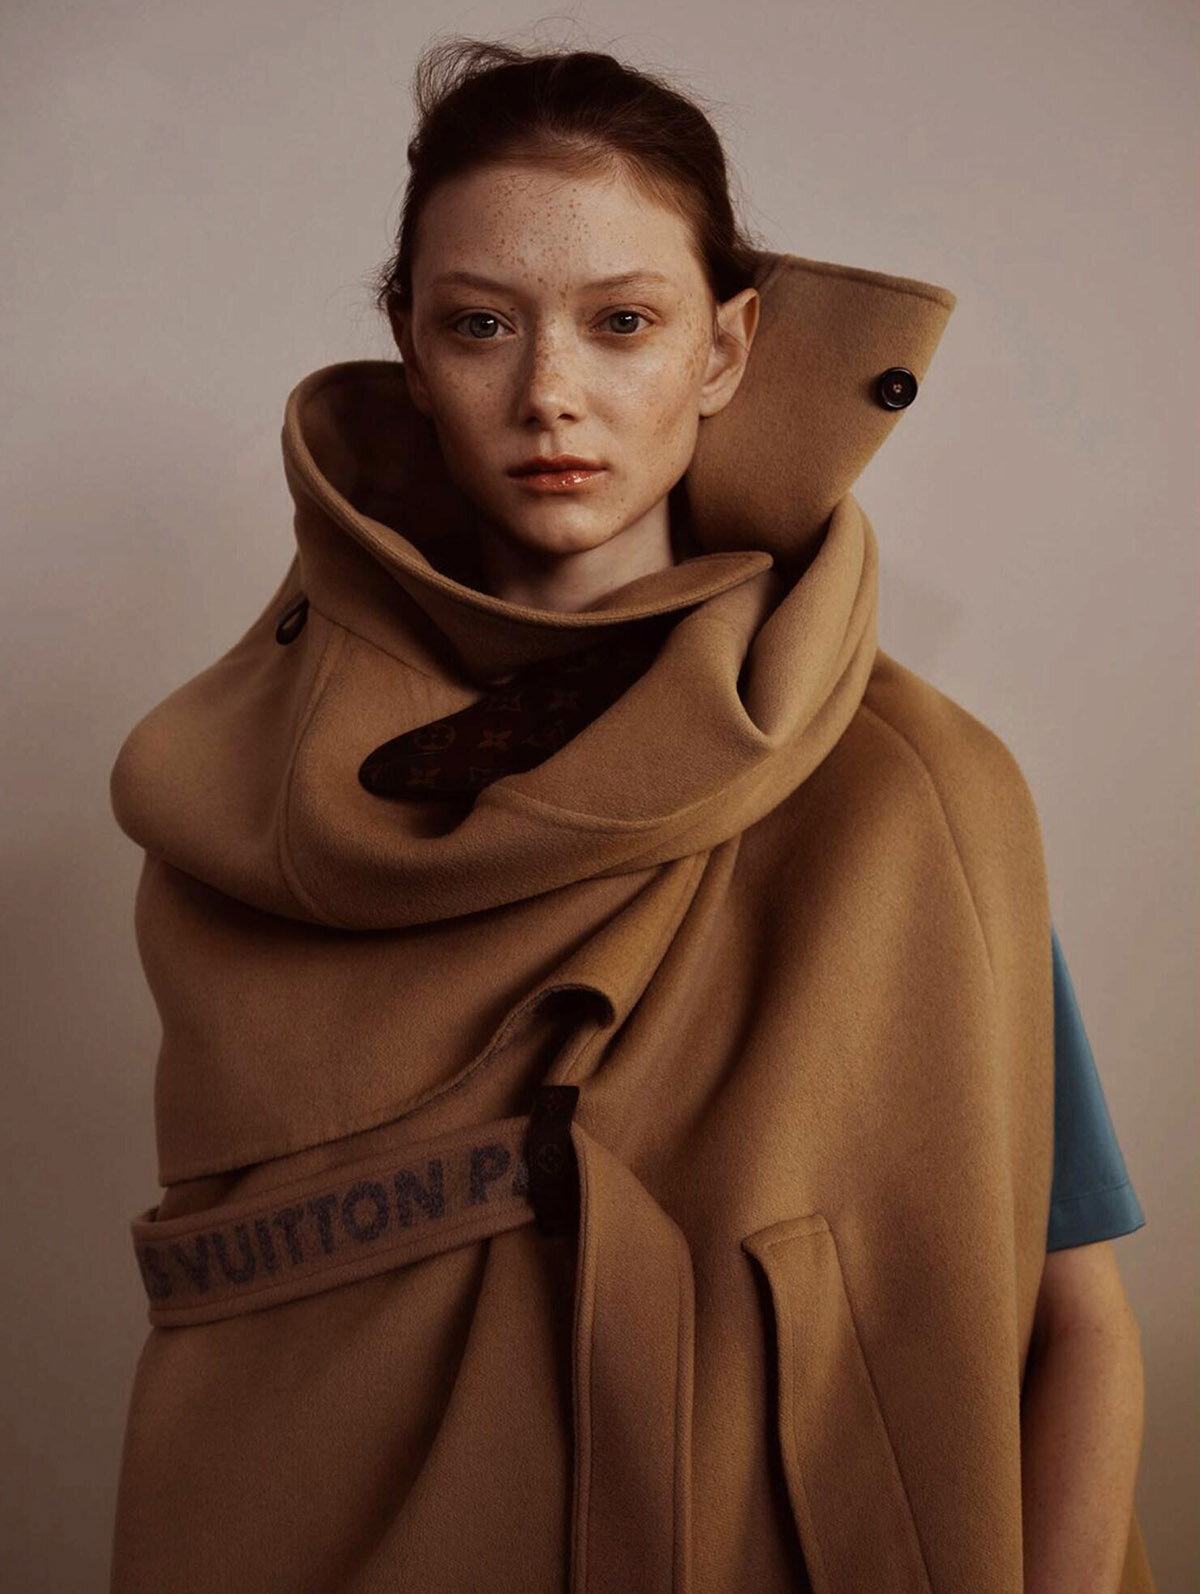 Sara-Grace-Wallerstedt-by-Geordie-Wood-for-Vogue-Australia-July-2021-11.jpg